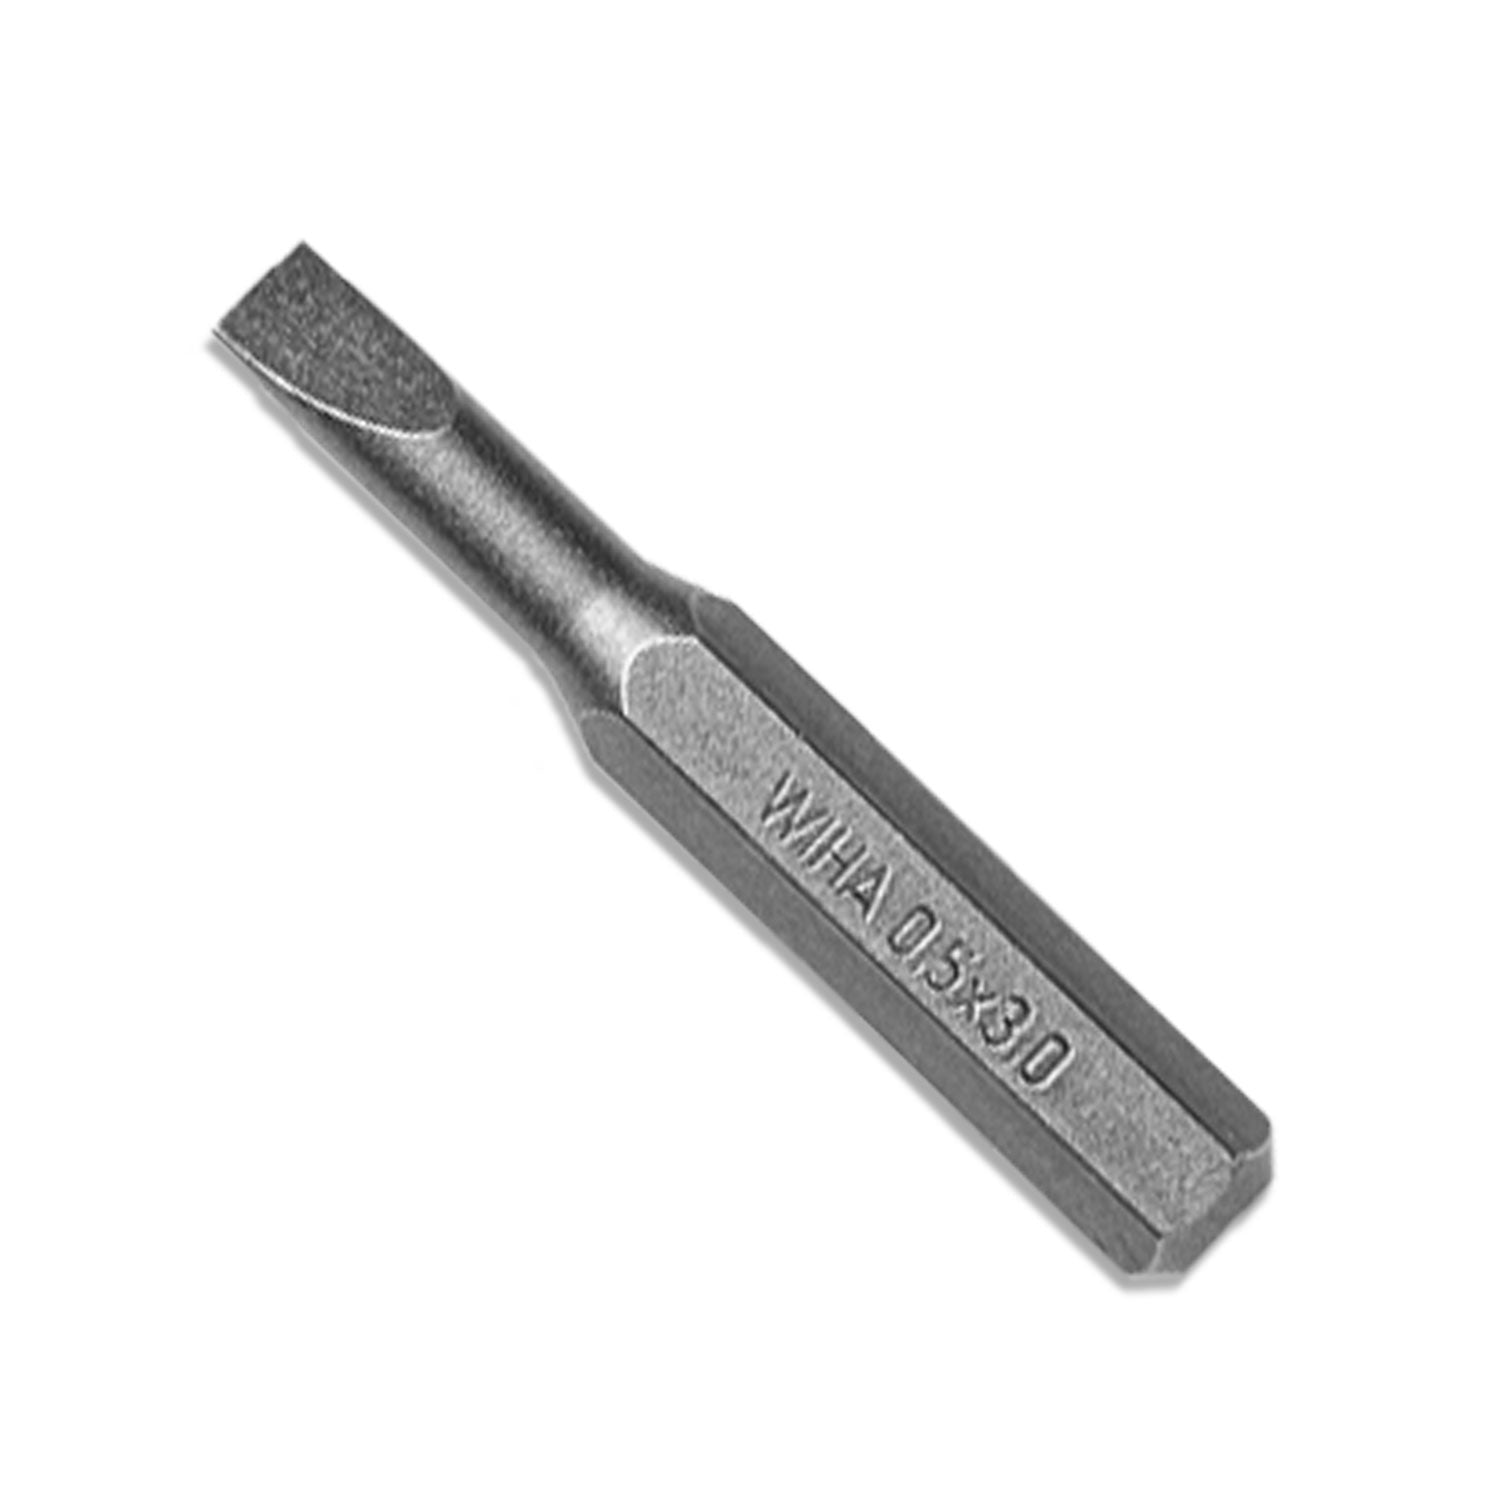 Flathead - 3mm x 28 mm Micro Bit